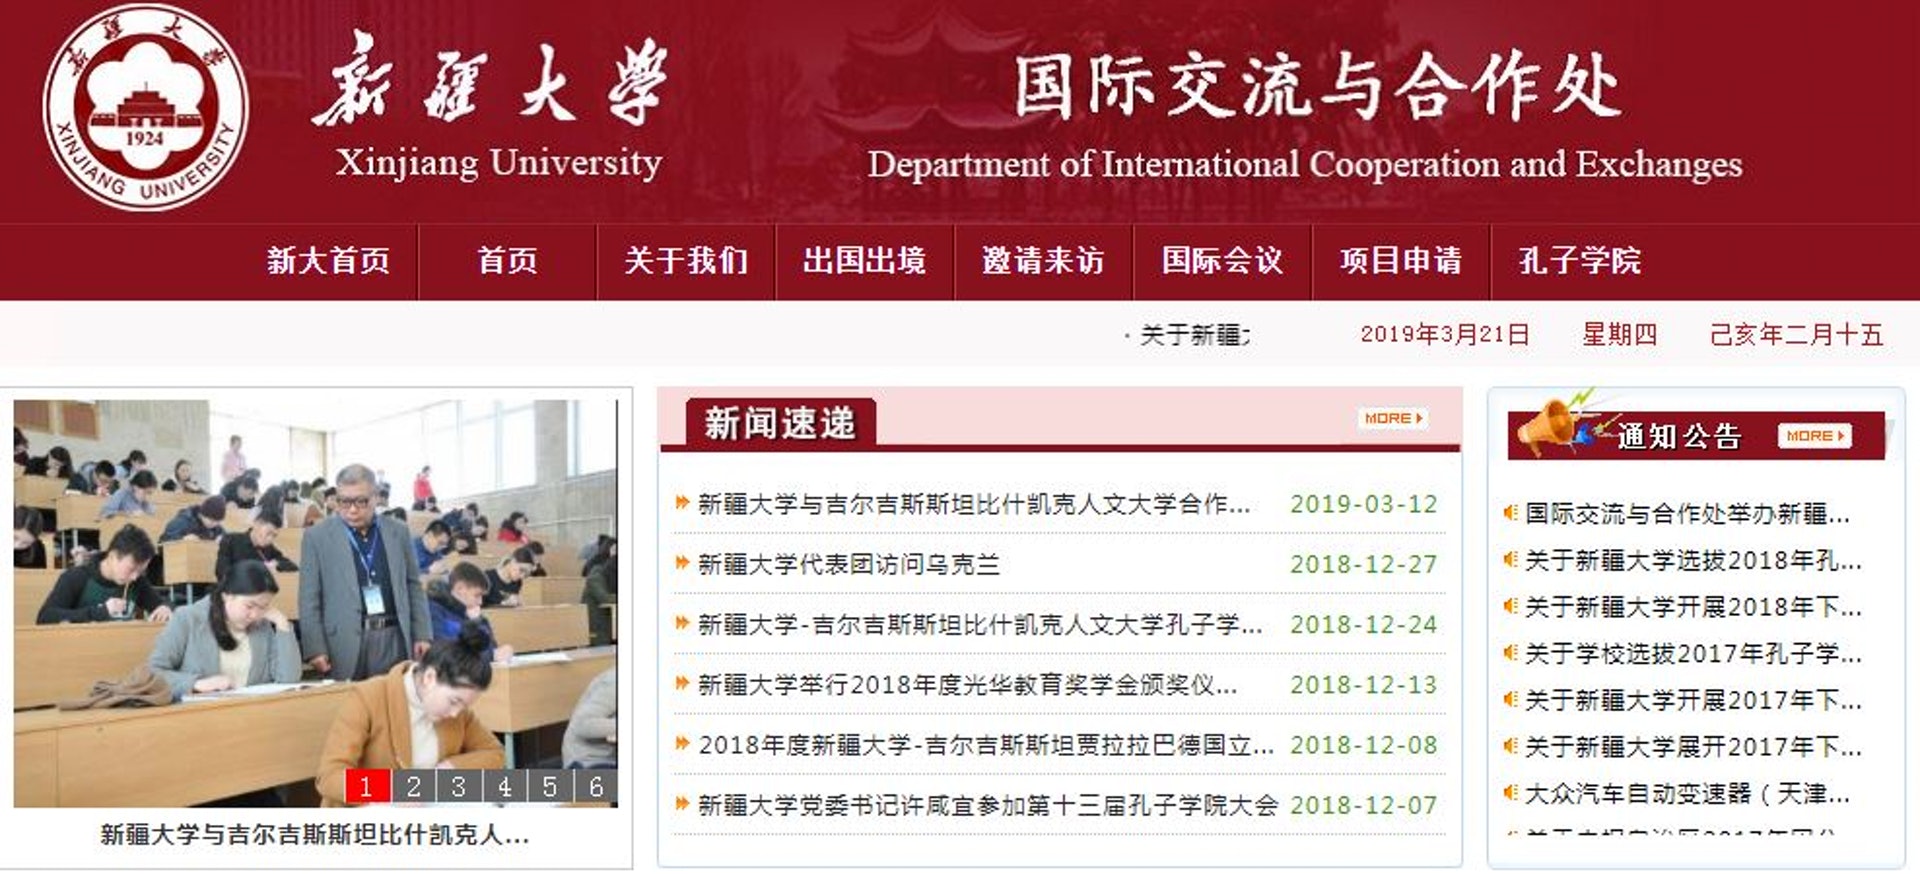 官方網站上一些子頁面，如「國際交流合作處」，曾出現雙語校徽。（網頁截圖）